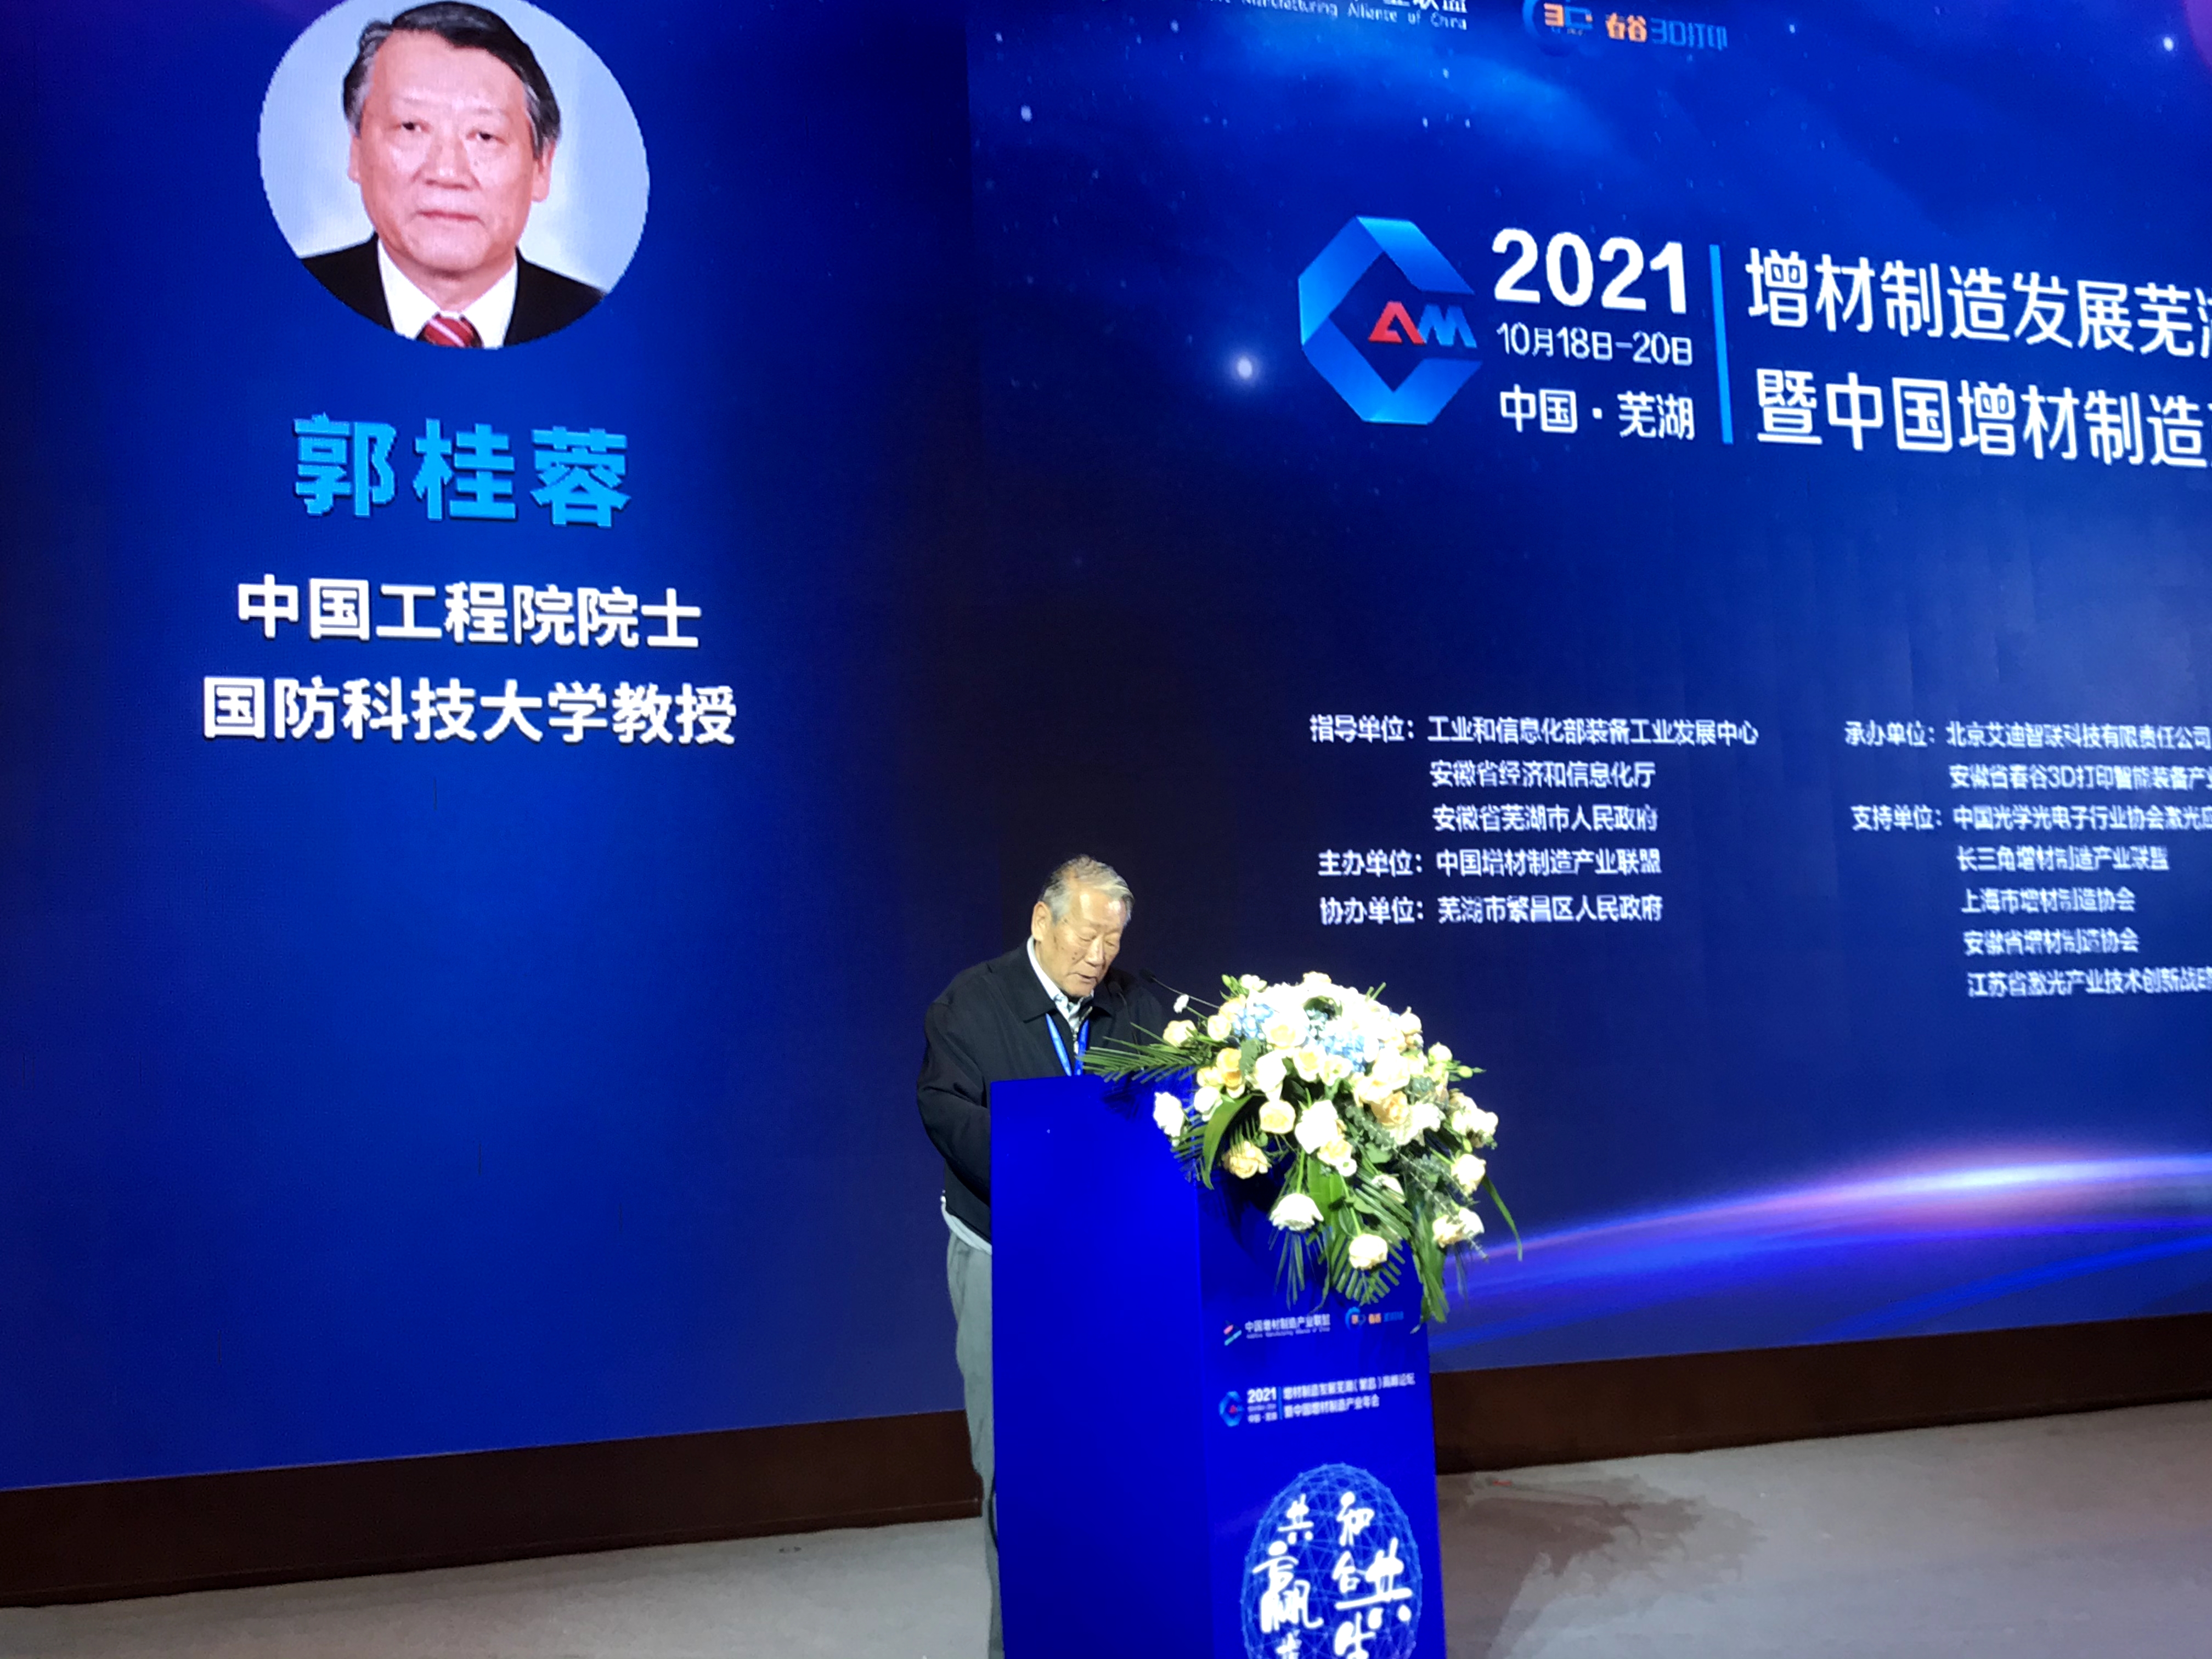 2021增材制造发展芜湖（繁昌）高峰论坛暨中国增材制造产业年会在芜湖成功召开